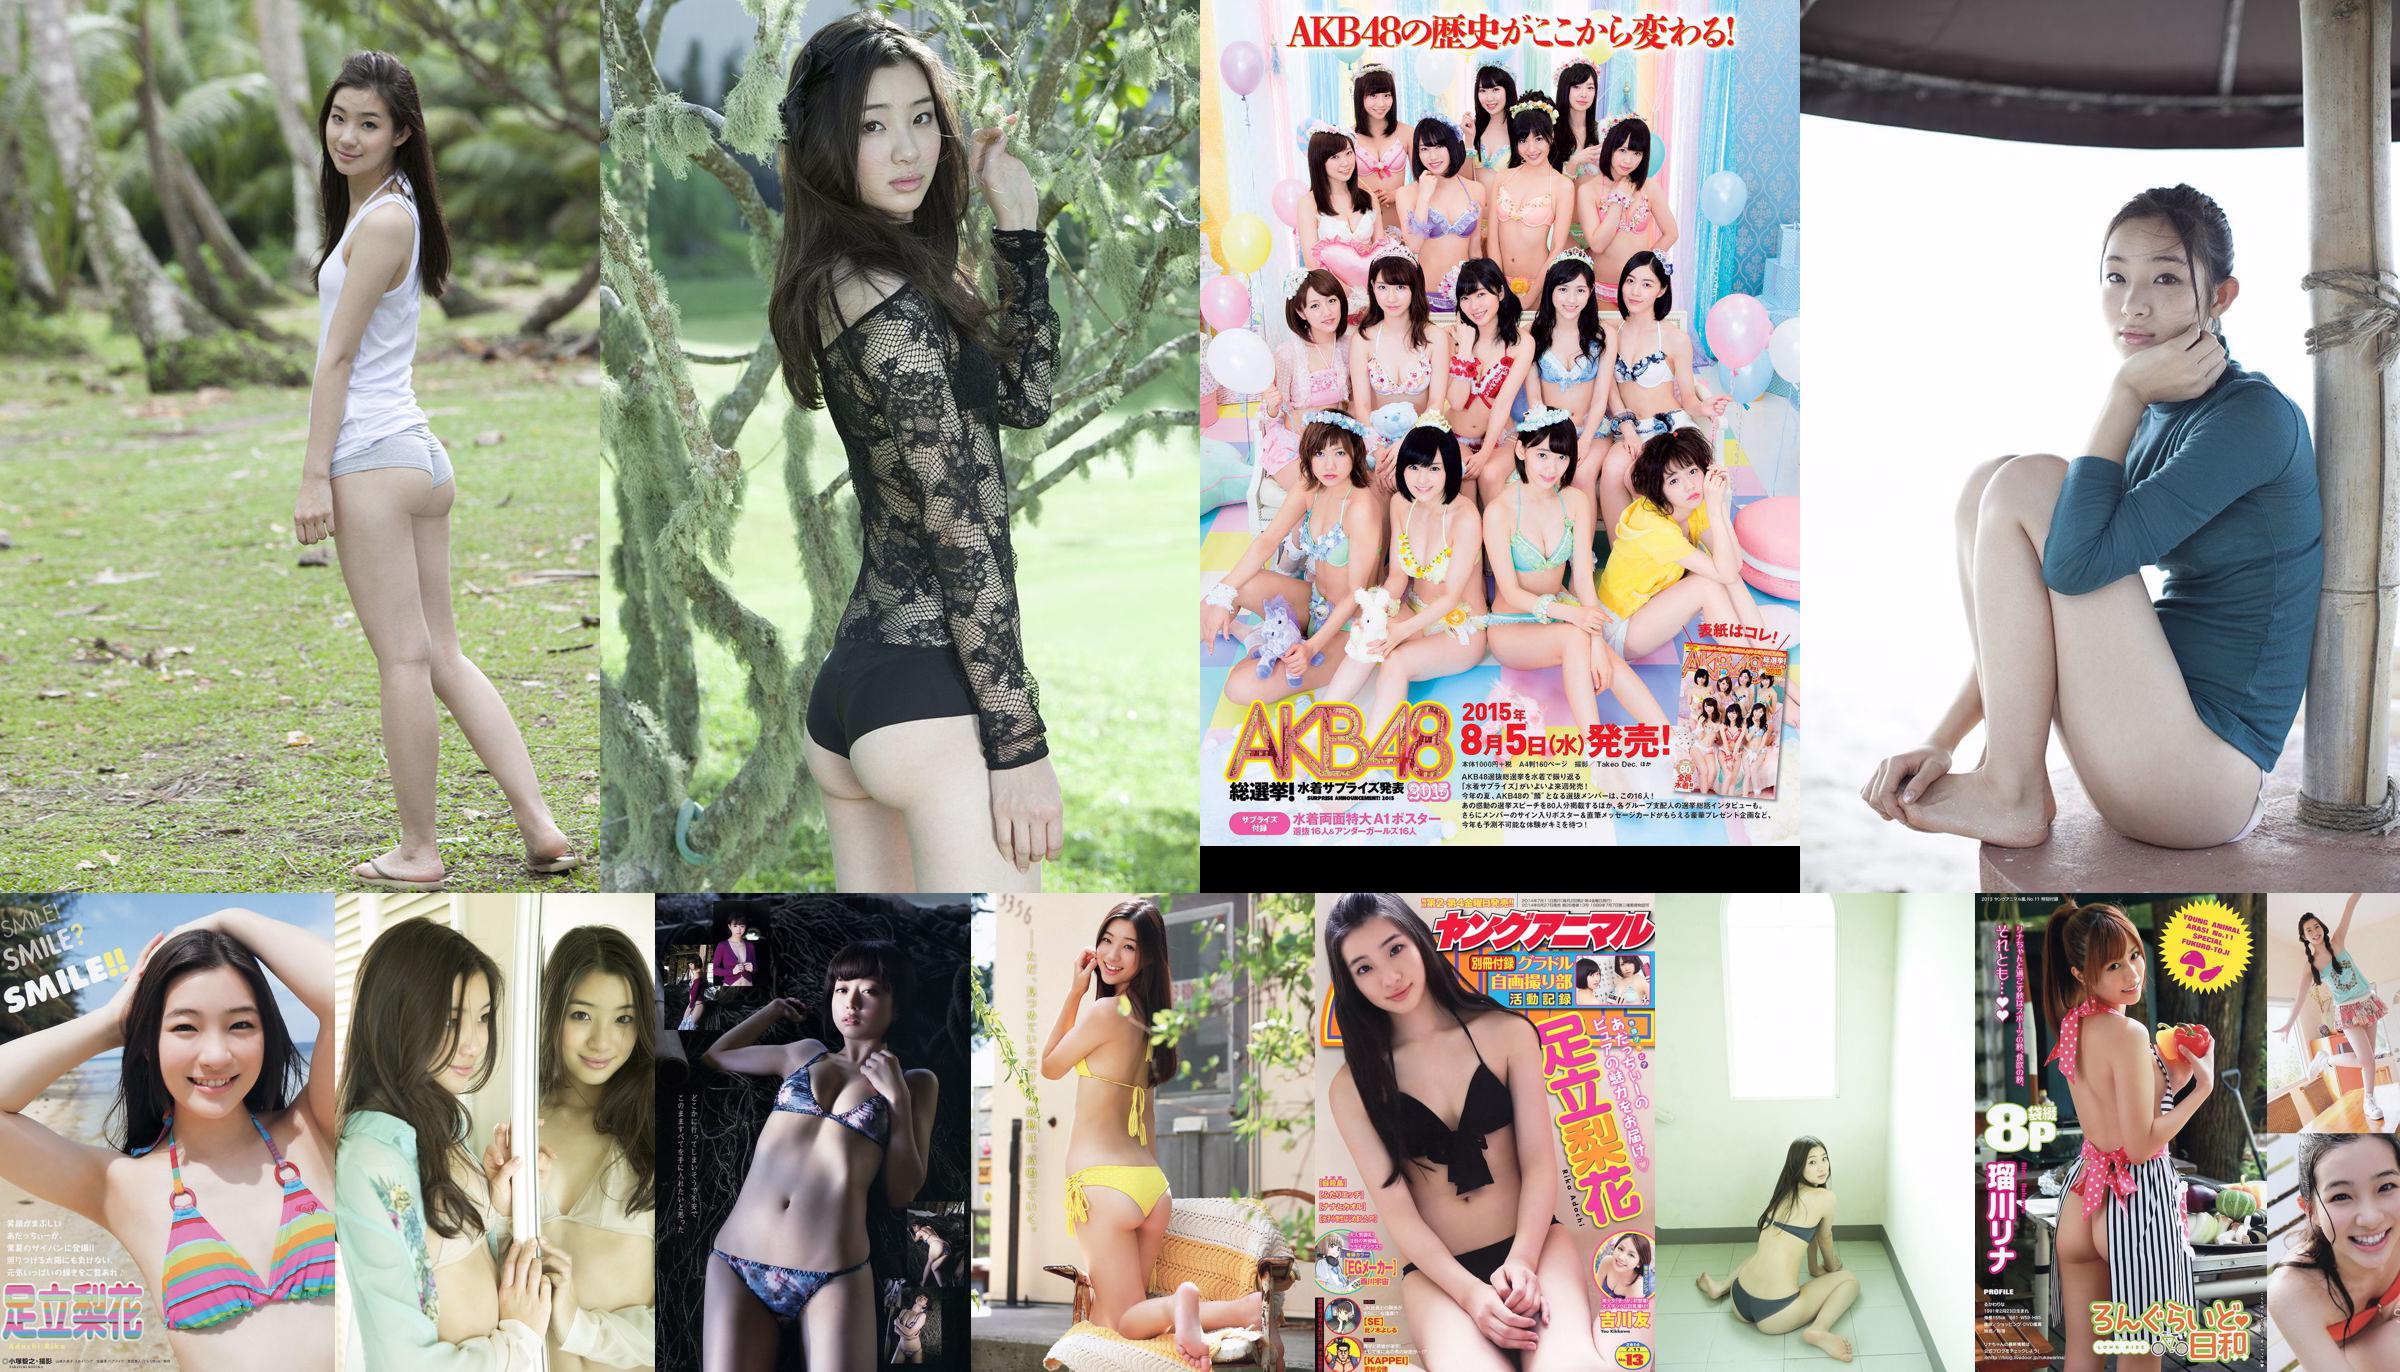 Adachi Rika, Kiya Takeshi, 瑠 川 リ ナ [Edición especial de animales jóvenes Arashi] No.11 2013 Photo Magazine No.eefd8a Página 9